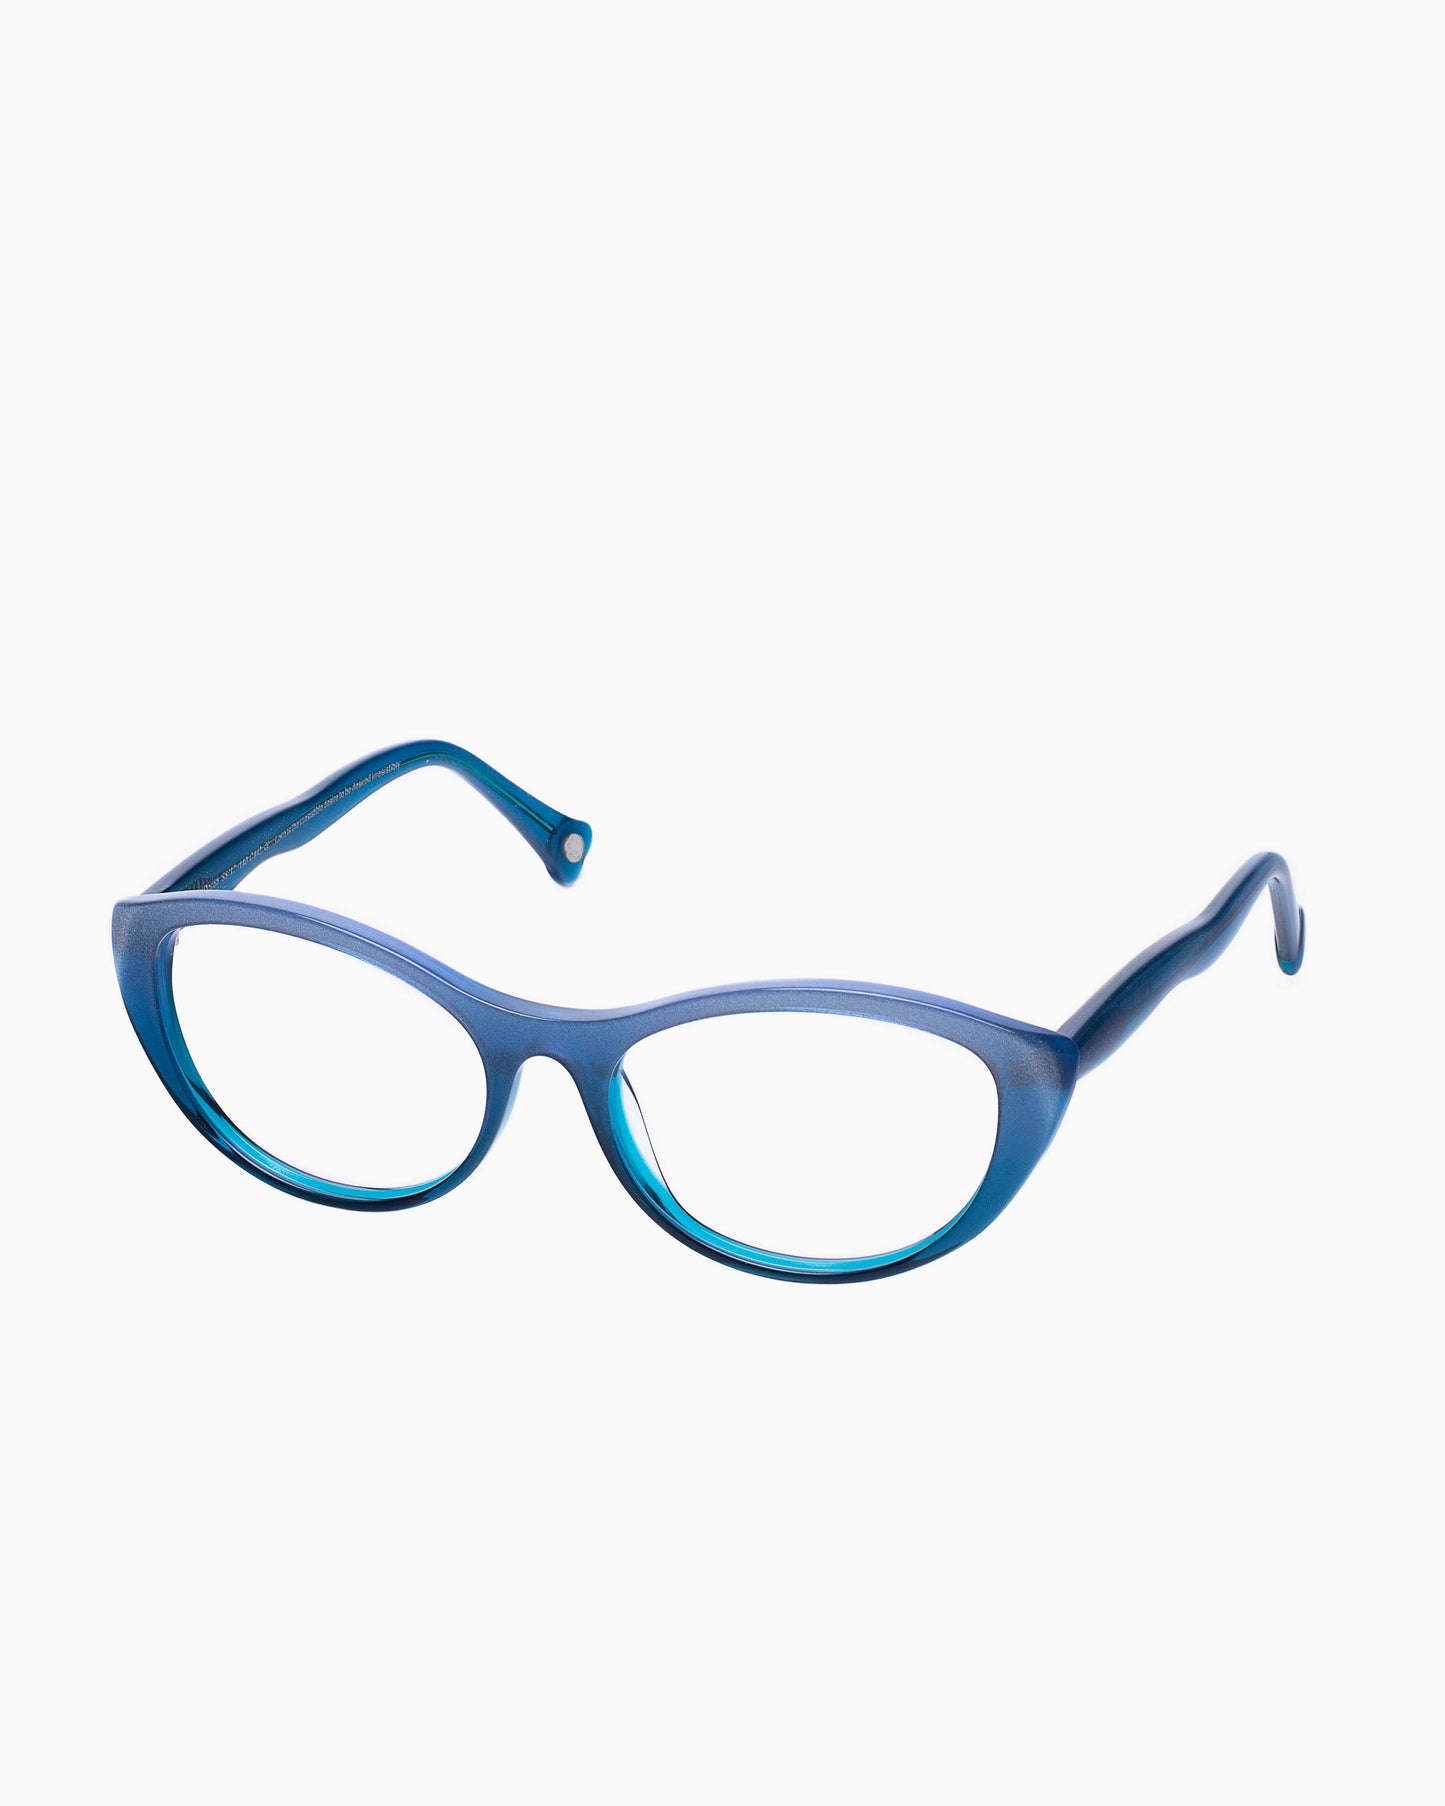 Spectacleeyeworks - Golden - C442 | glasses bar